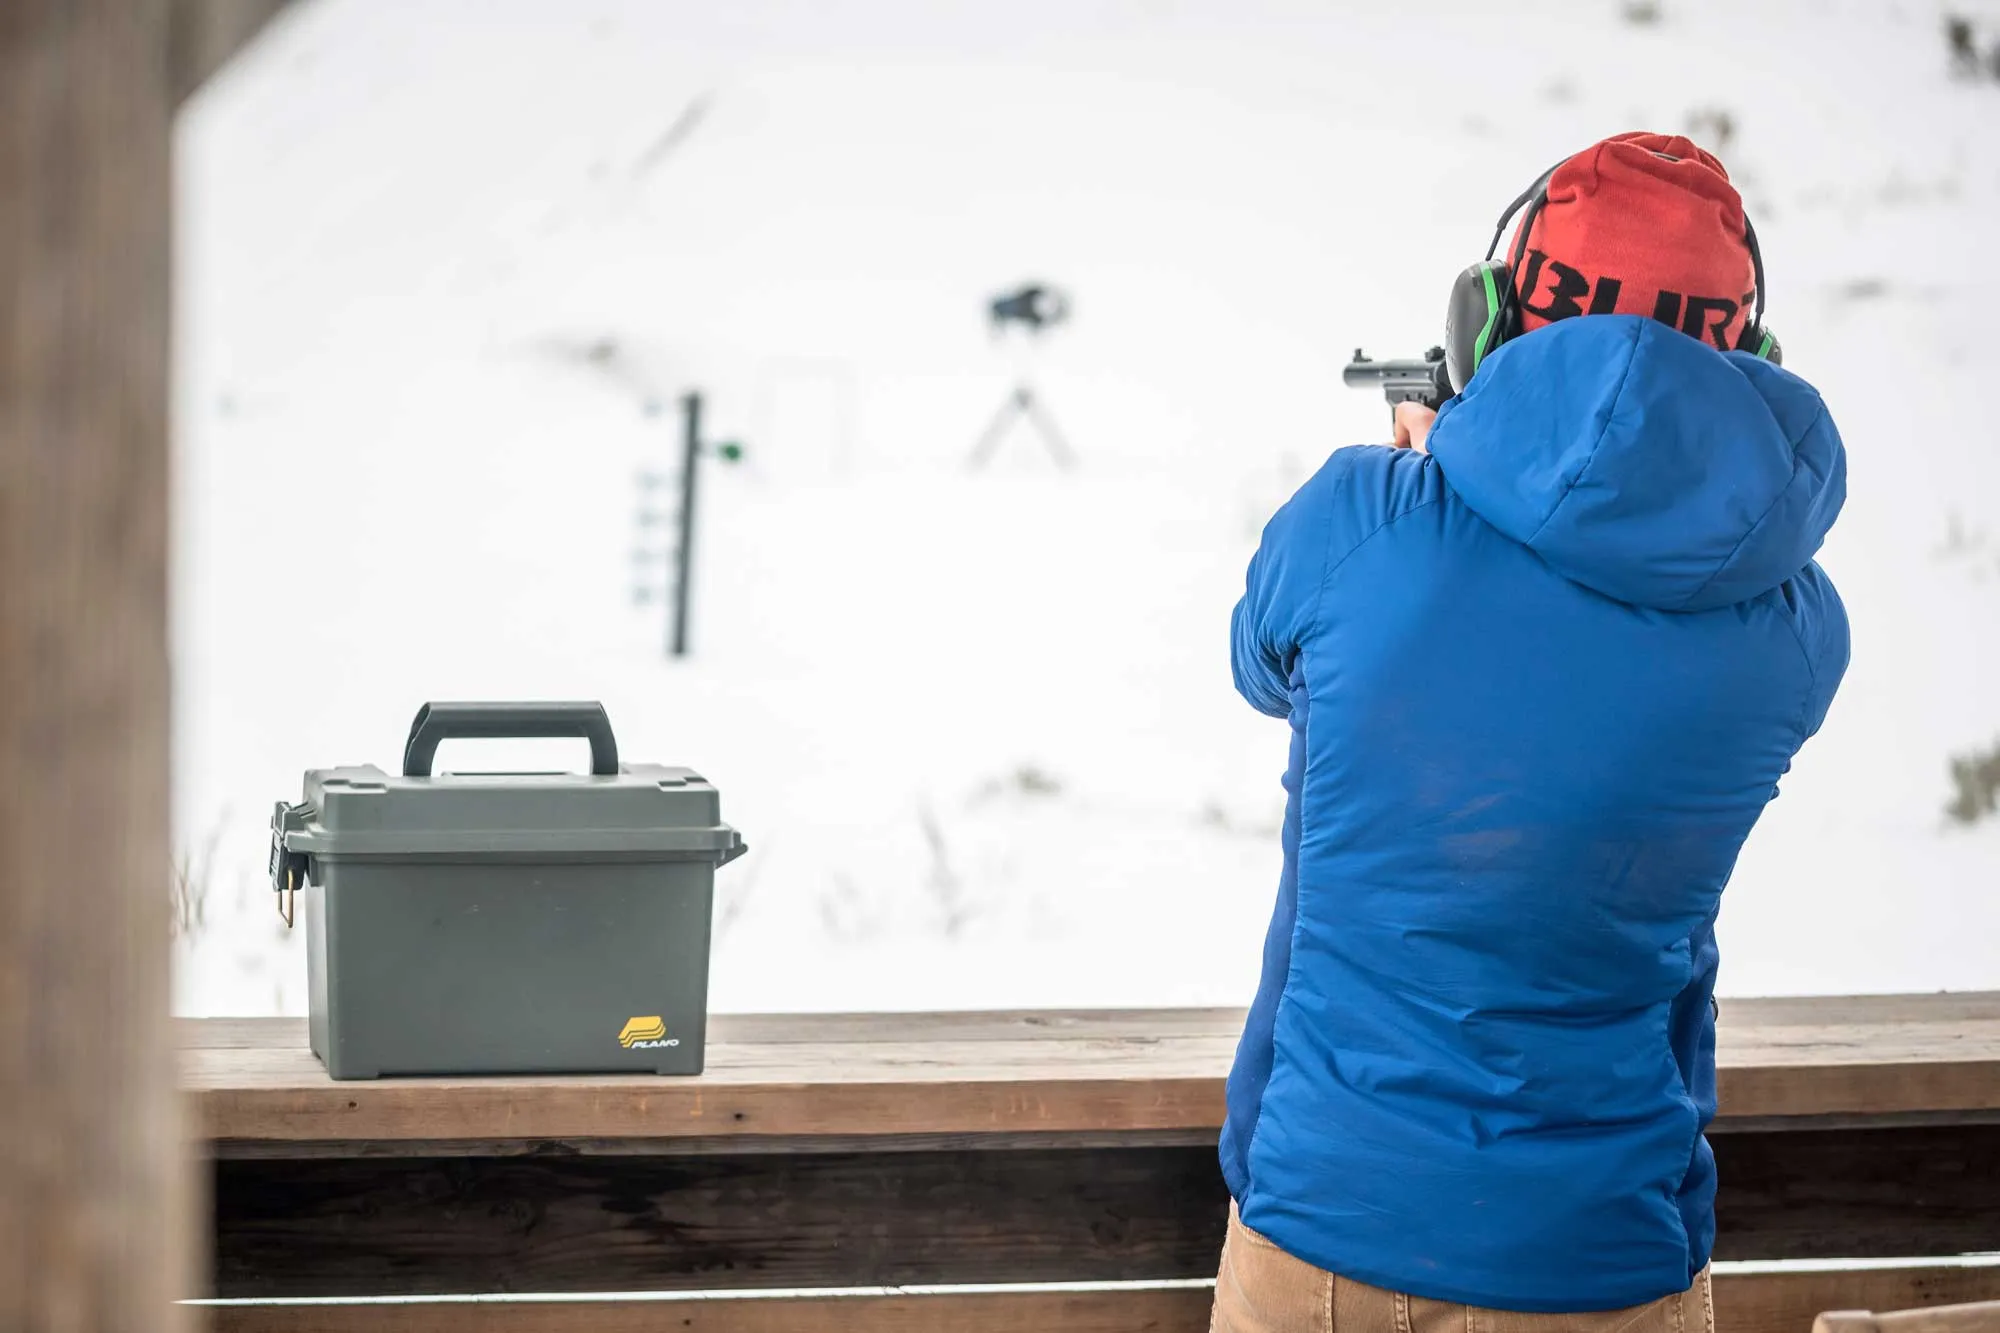 Man shooting target at gun range in the snow